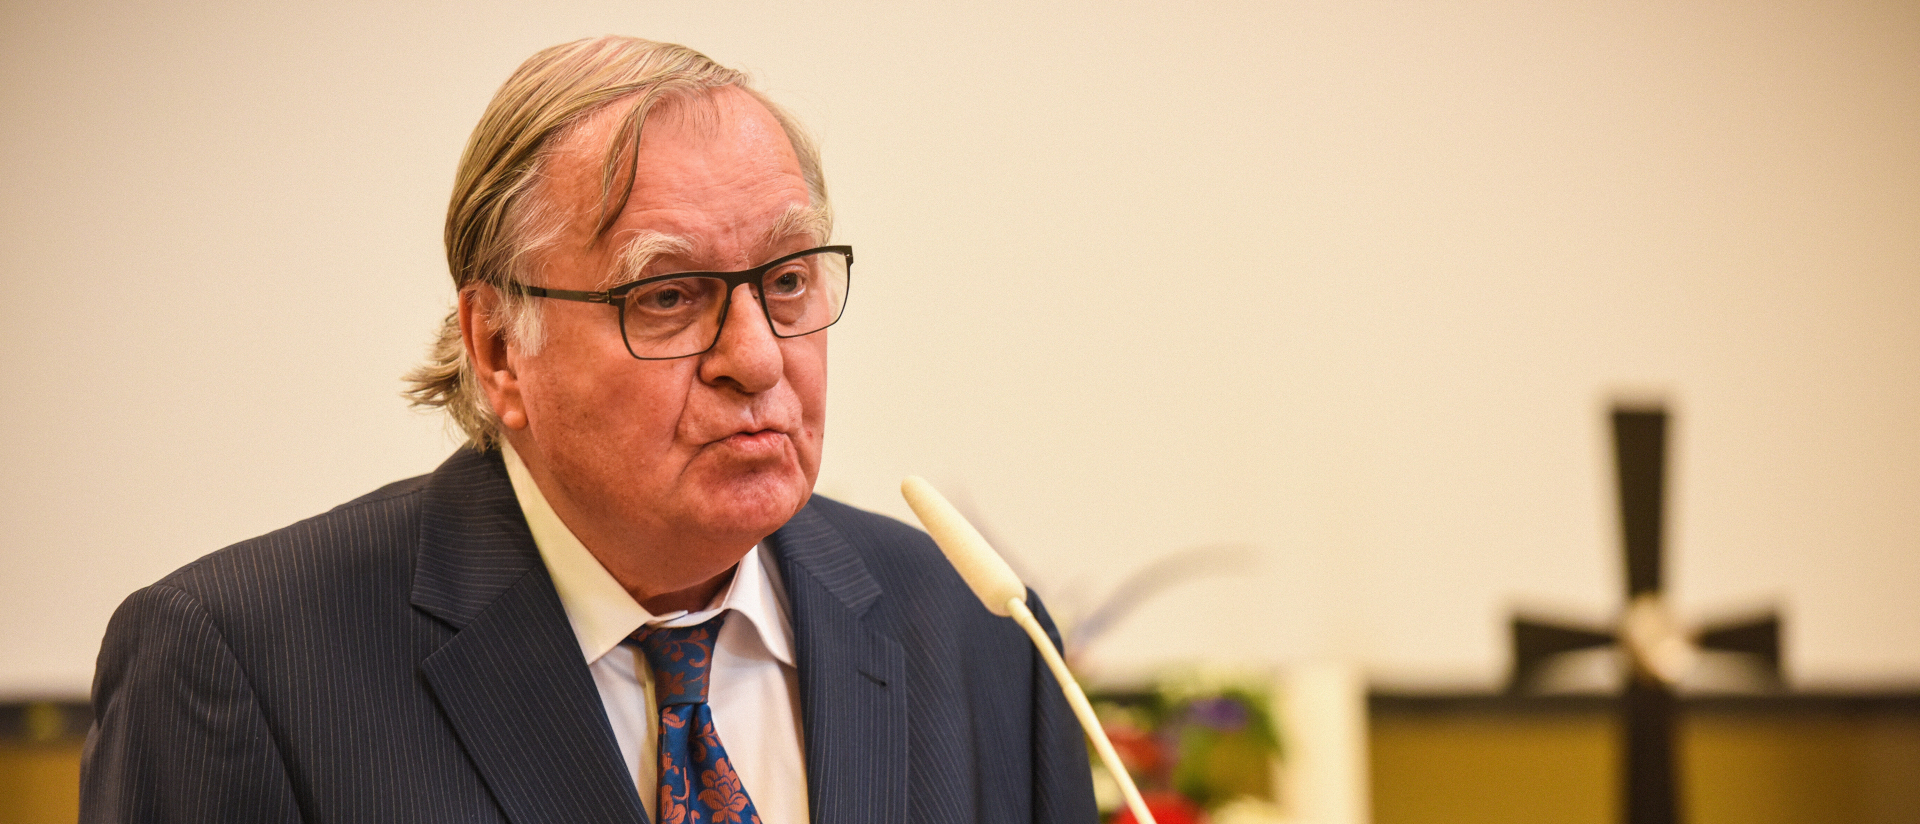 Huub Oosterhuis, Theologe, am 19. November 2014 in Bonn.